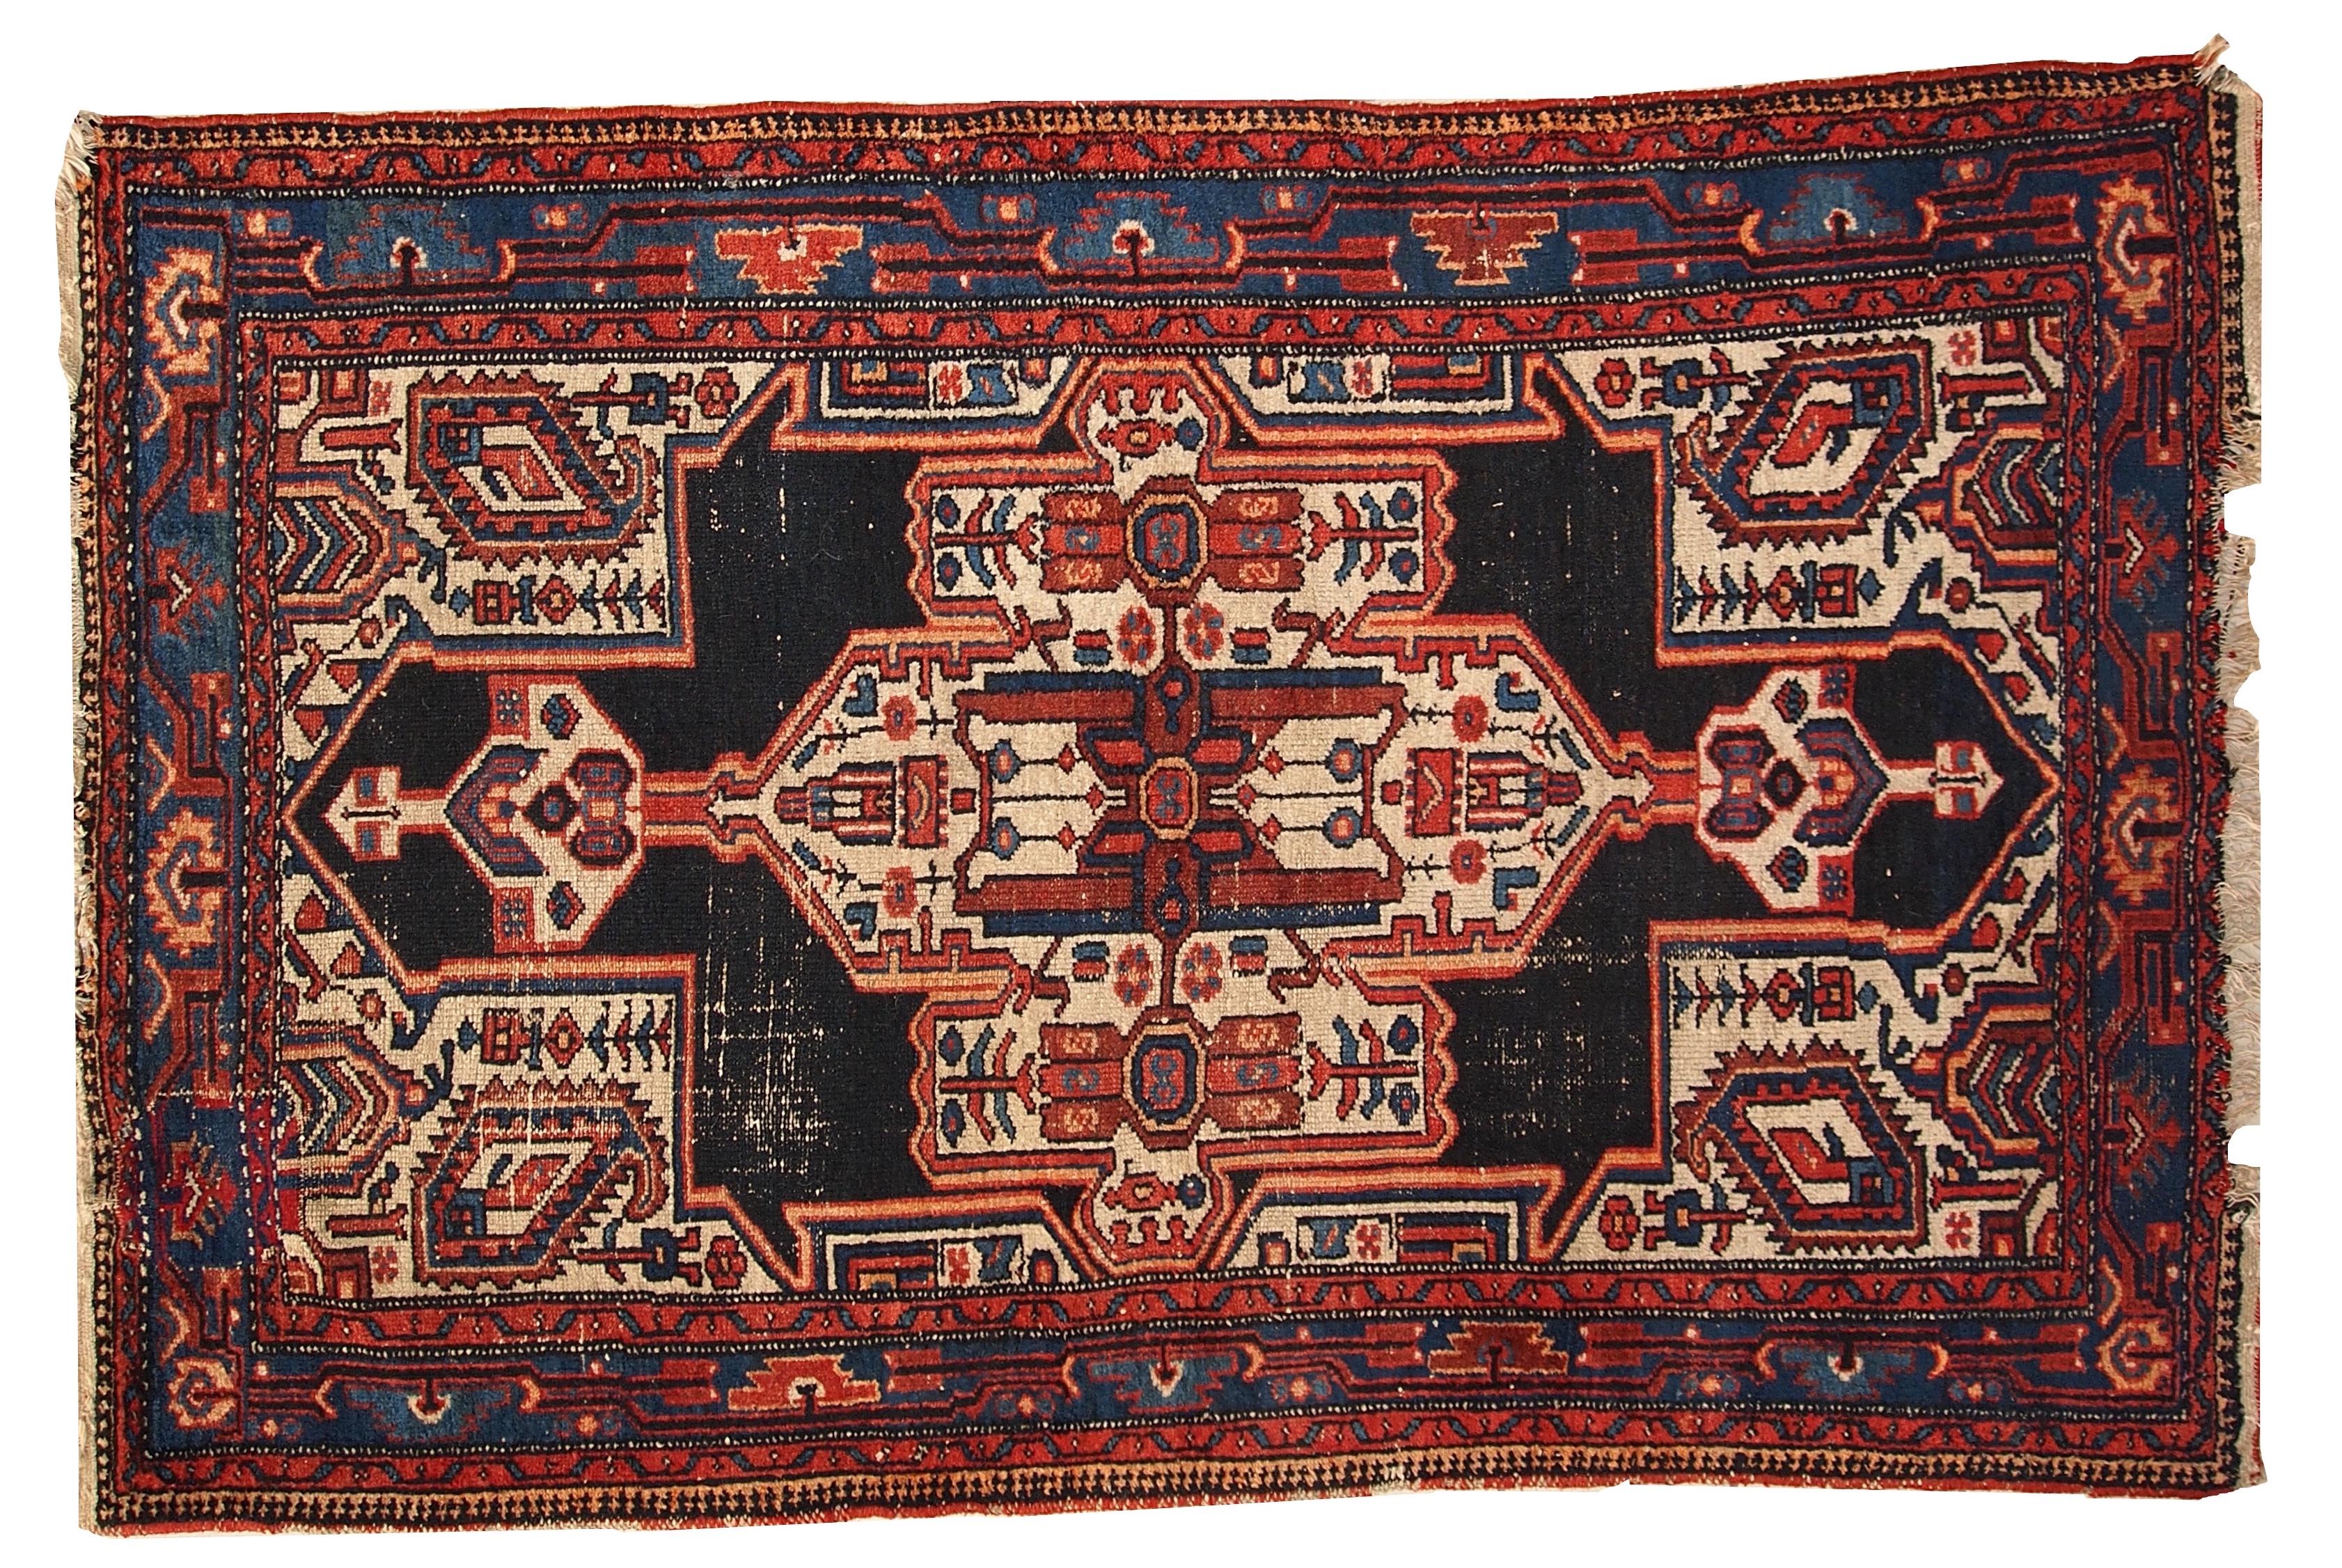 Antiker persischer Hamadan-Teppich im Originalzustand (Altersabnutzung). Der Teppich ist in Schwarz-, Orange-, Rot- und Weißtönen gehalten und hat ein geometrisches Muster.
 